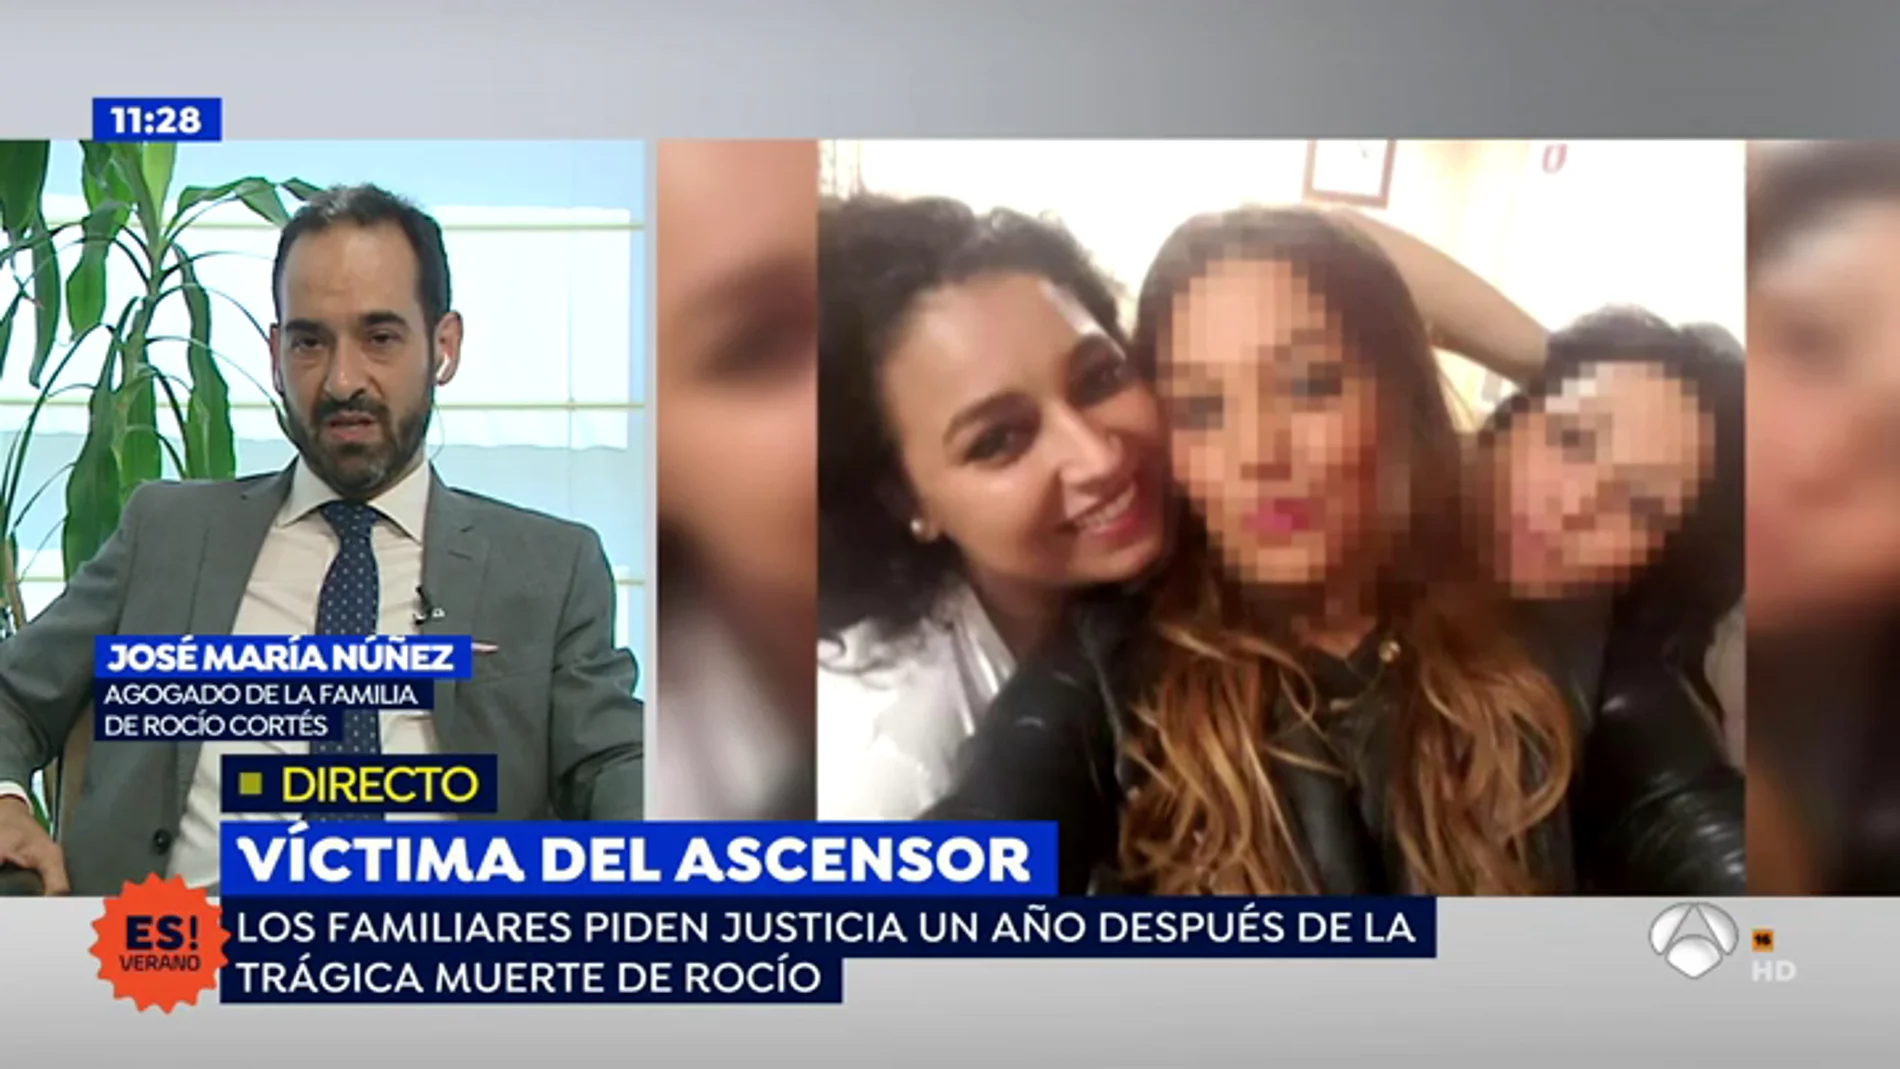 Abogado de la familia de Rocío: "La familia busca una explicación a lo ocurrido"